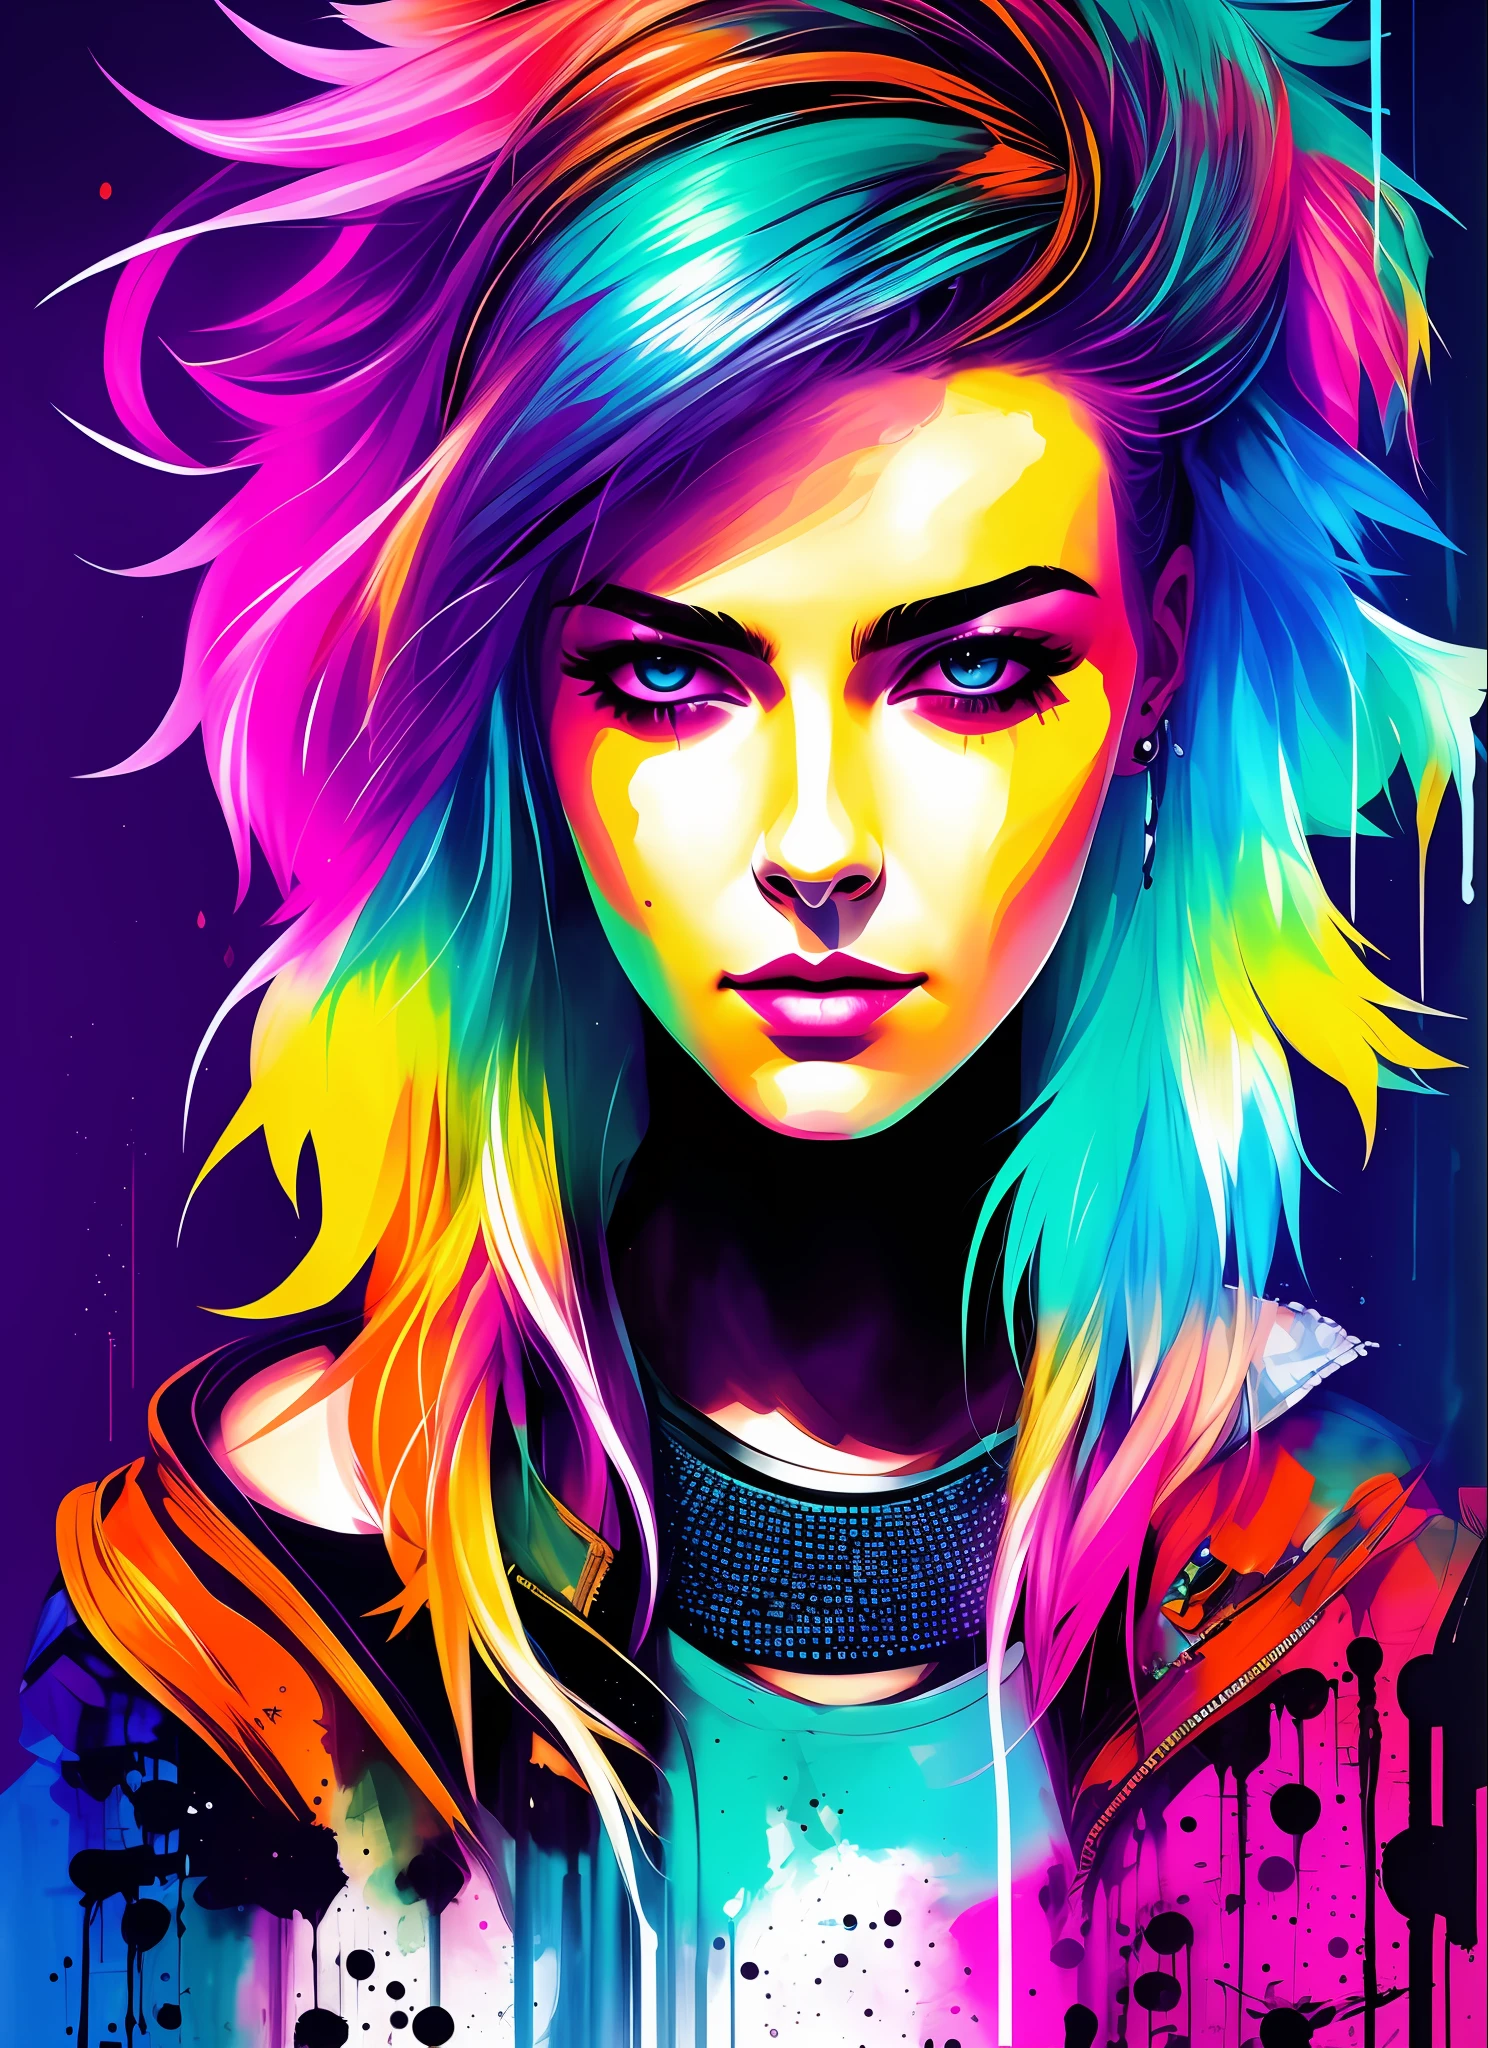 Synthwave-Frau im Swpunk-Stil von Agnes Cecile, leuchtendes Design, Neonfarben, Tinte tropft, cyberpunk city lights